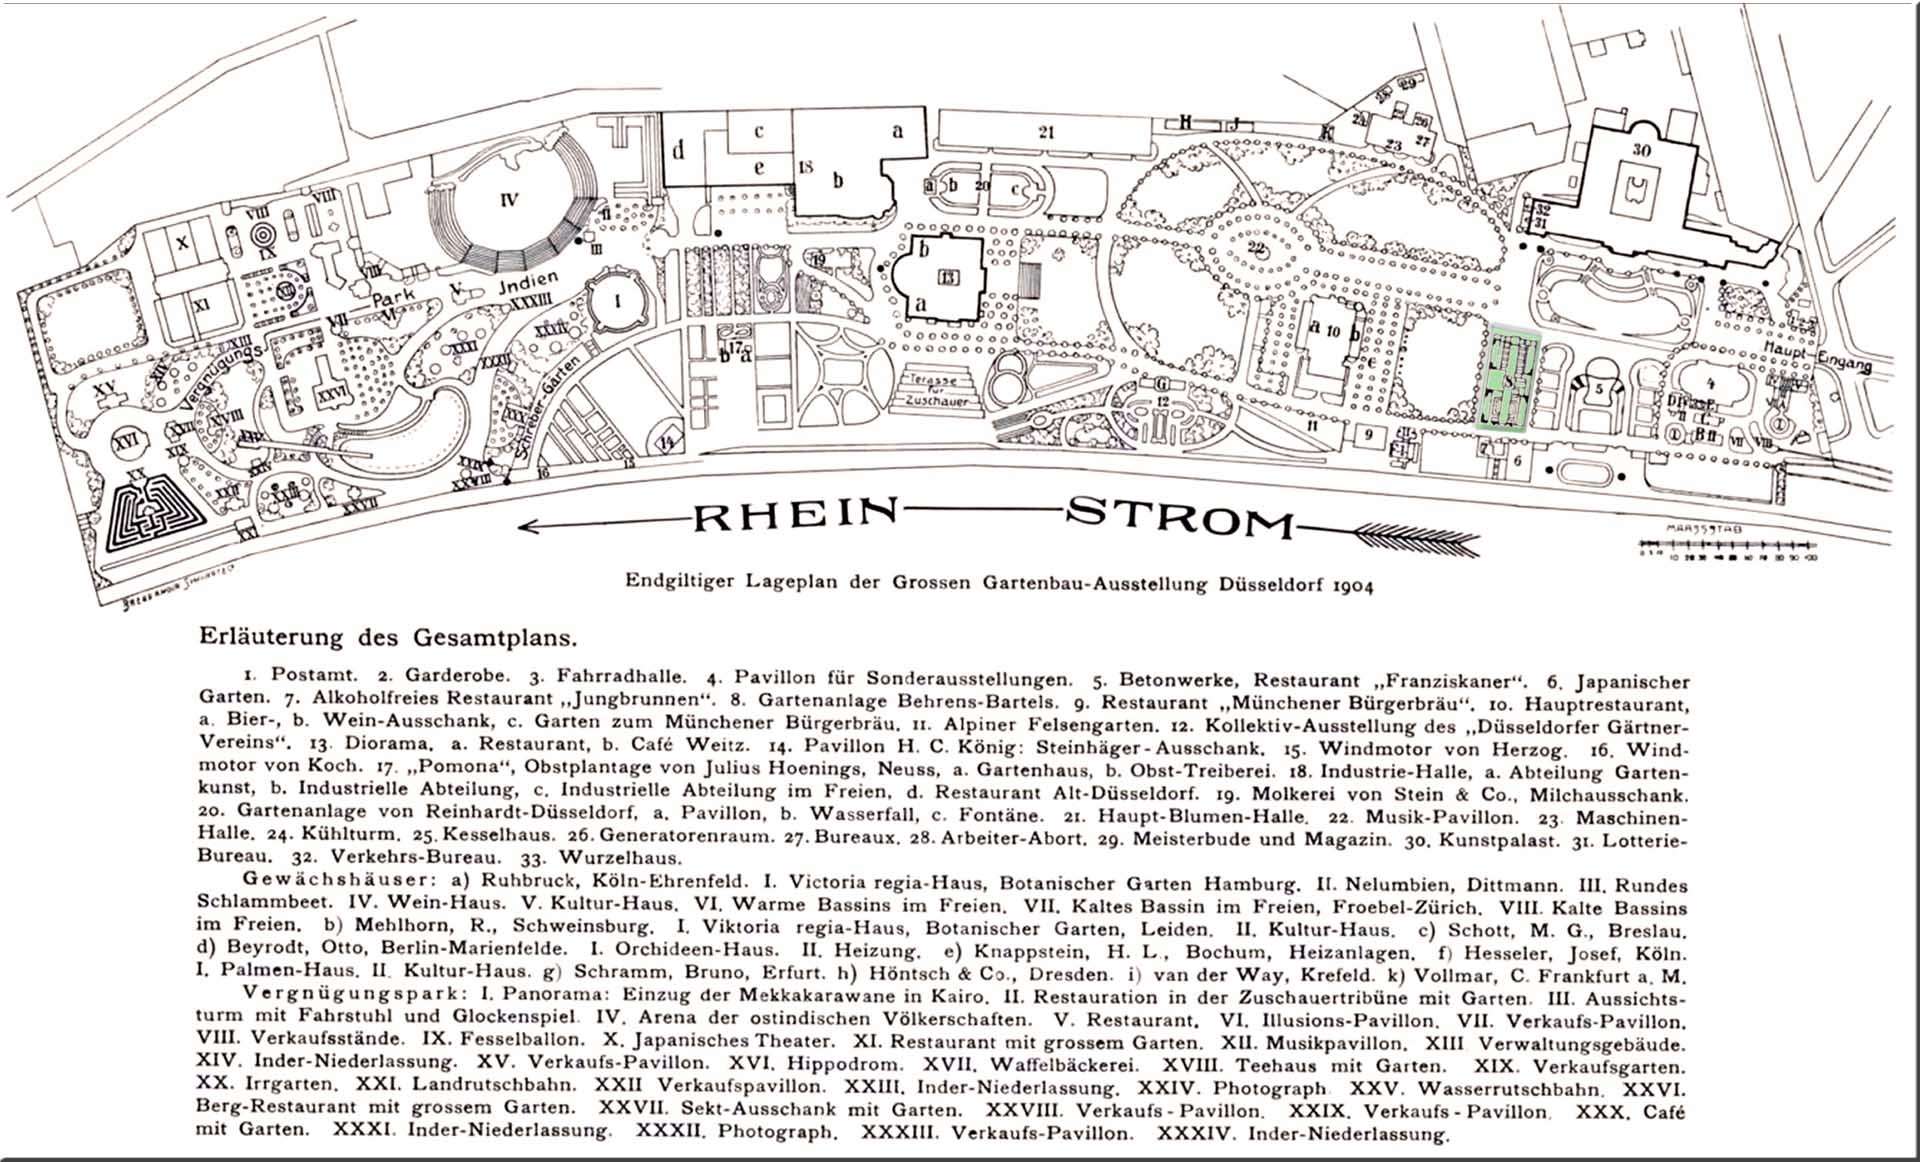 Lageplan der Internationalen Kunst-Ausstellung und großen Gartenbau-Ausstellung, Düsseldorf 1904